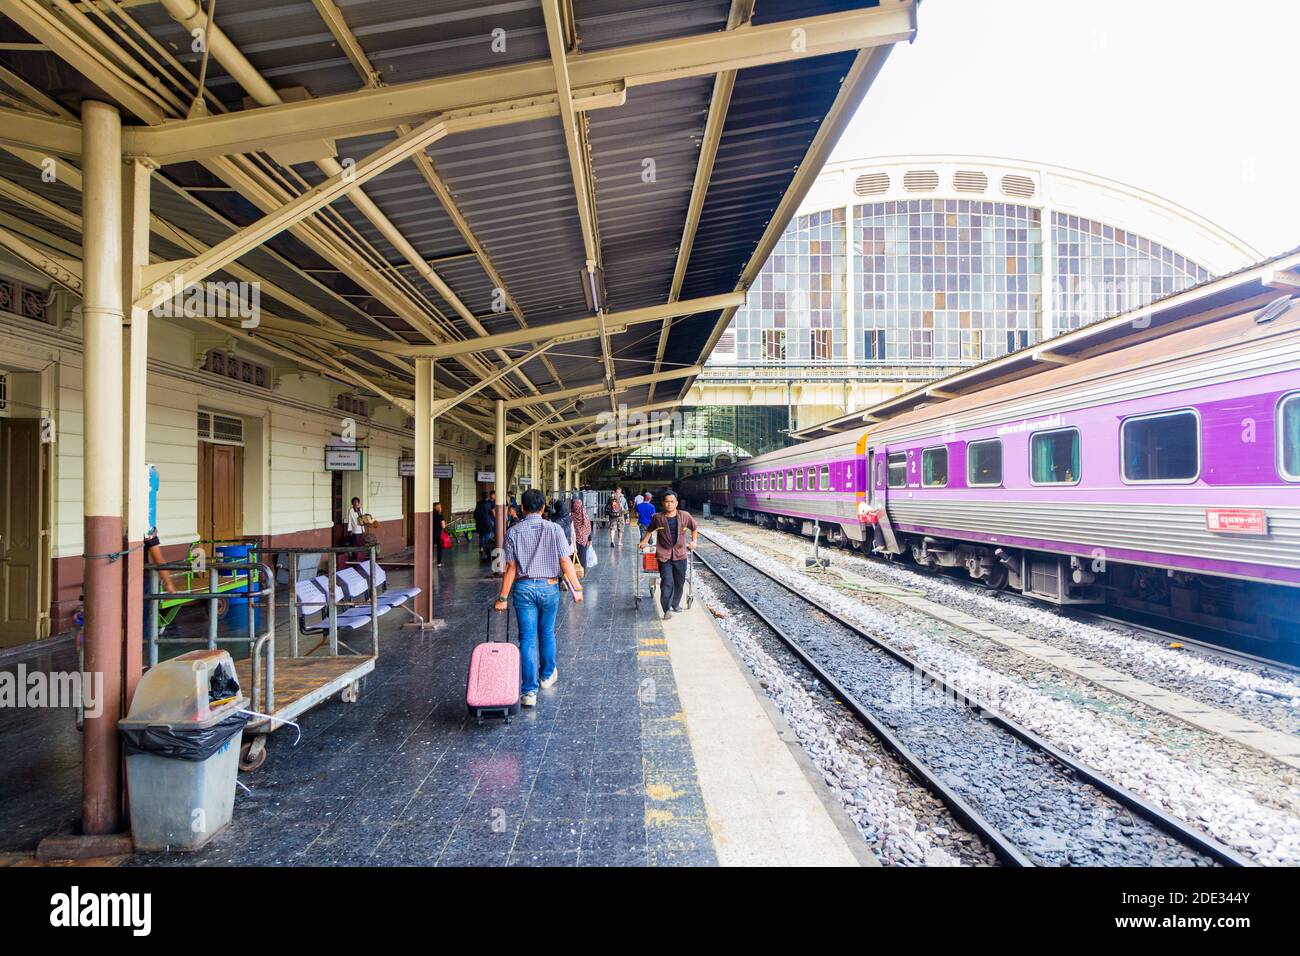 Trains and passengers at the ol Hua Lamphong train station in Bangkok, Thailand Stock Photo